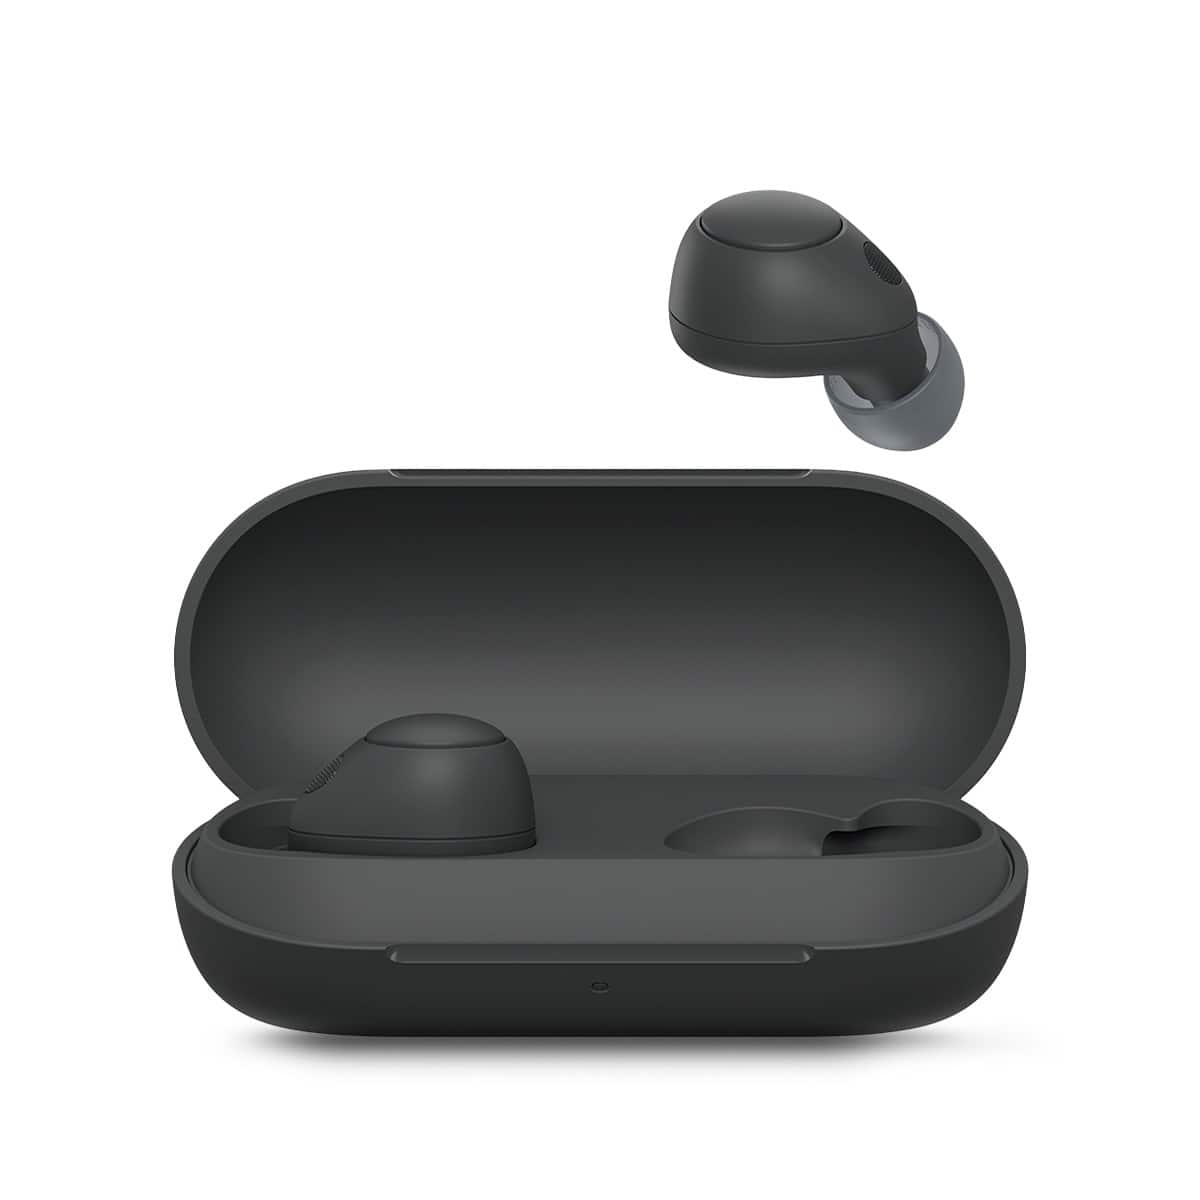 Los audífonos Sony WF-C700N con cancelación de ruido tienen descuento en Amazon